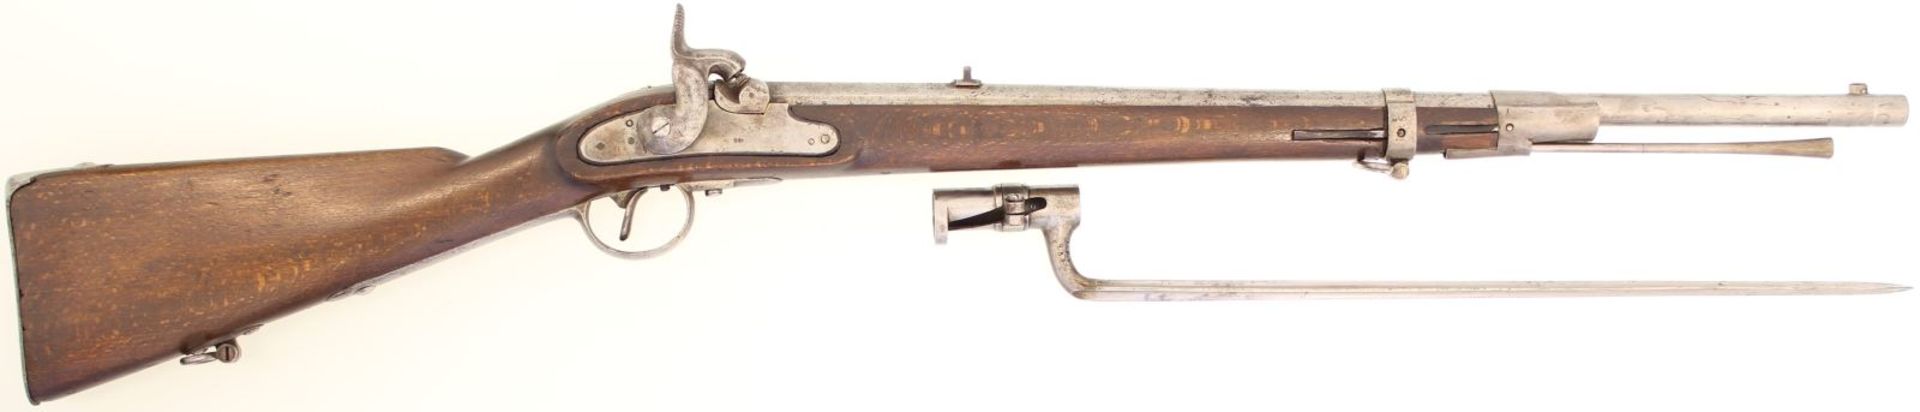 Perkussionsgewehr M 1854 System Lorenz, Kal. 13,9mm. Lauflänge=660mm, Standvisier, Schlossplatte mit